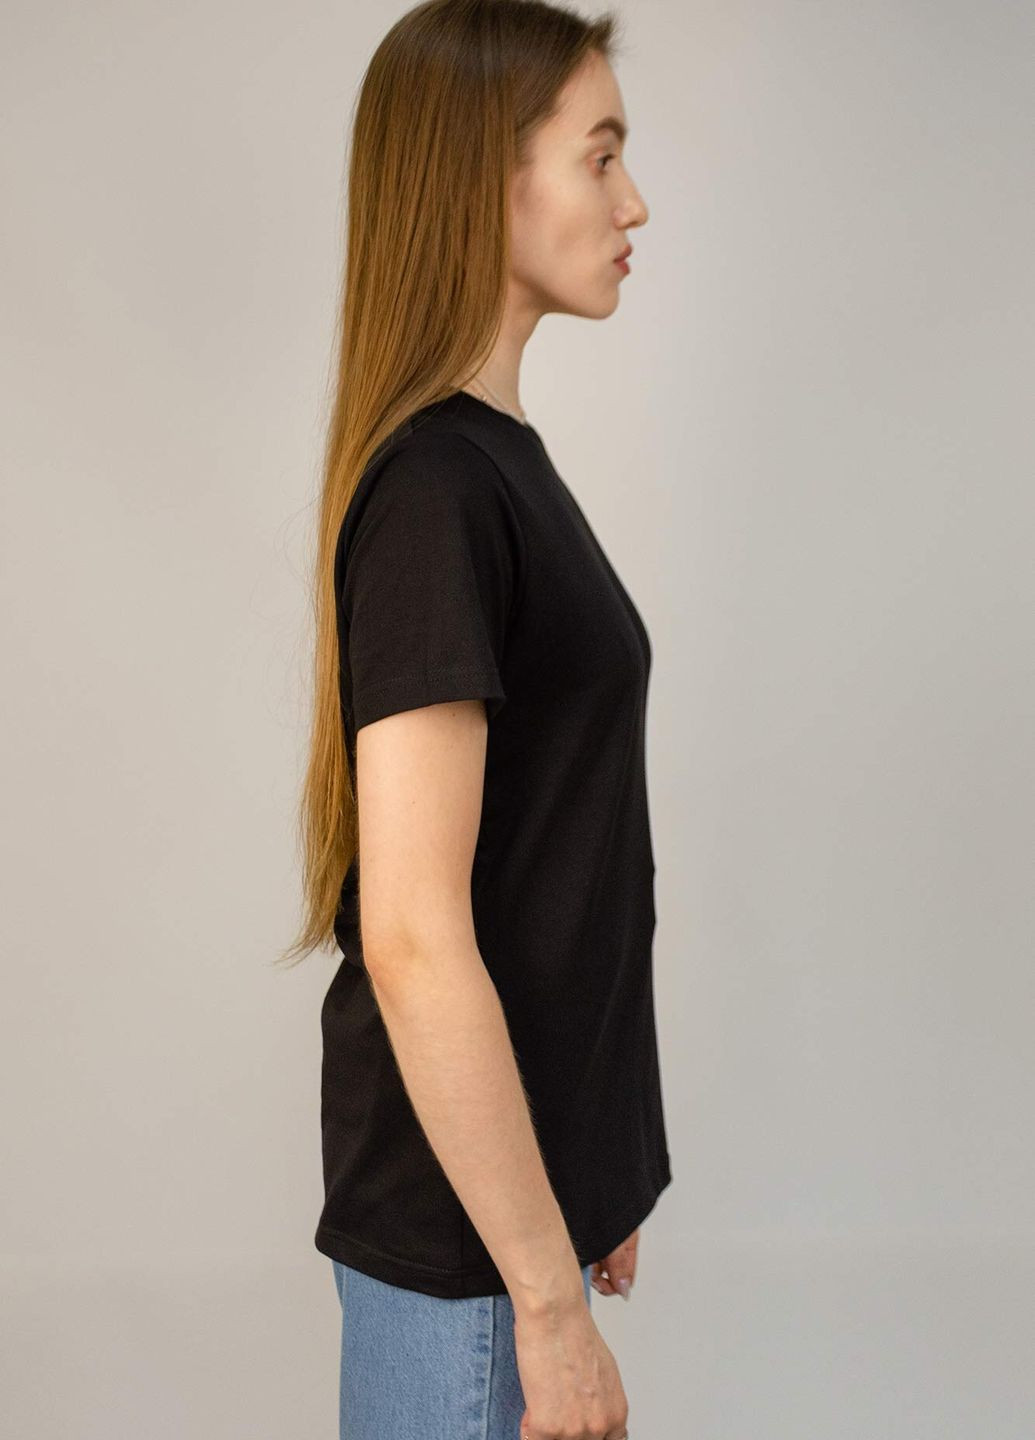 Черная летняя футболка женская base с коротким рукавом Hot